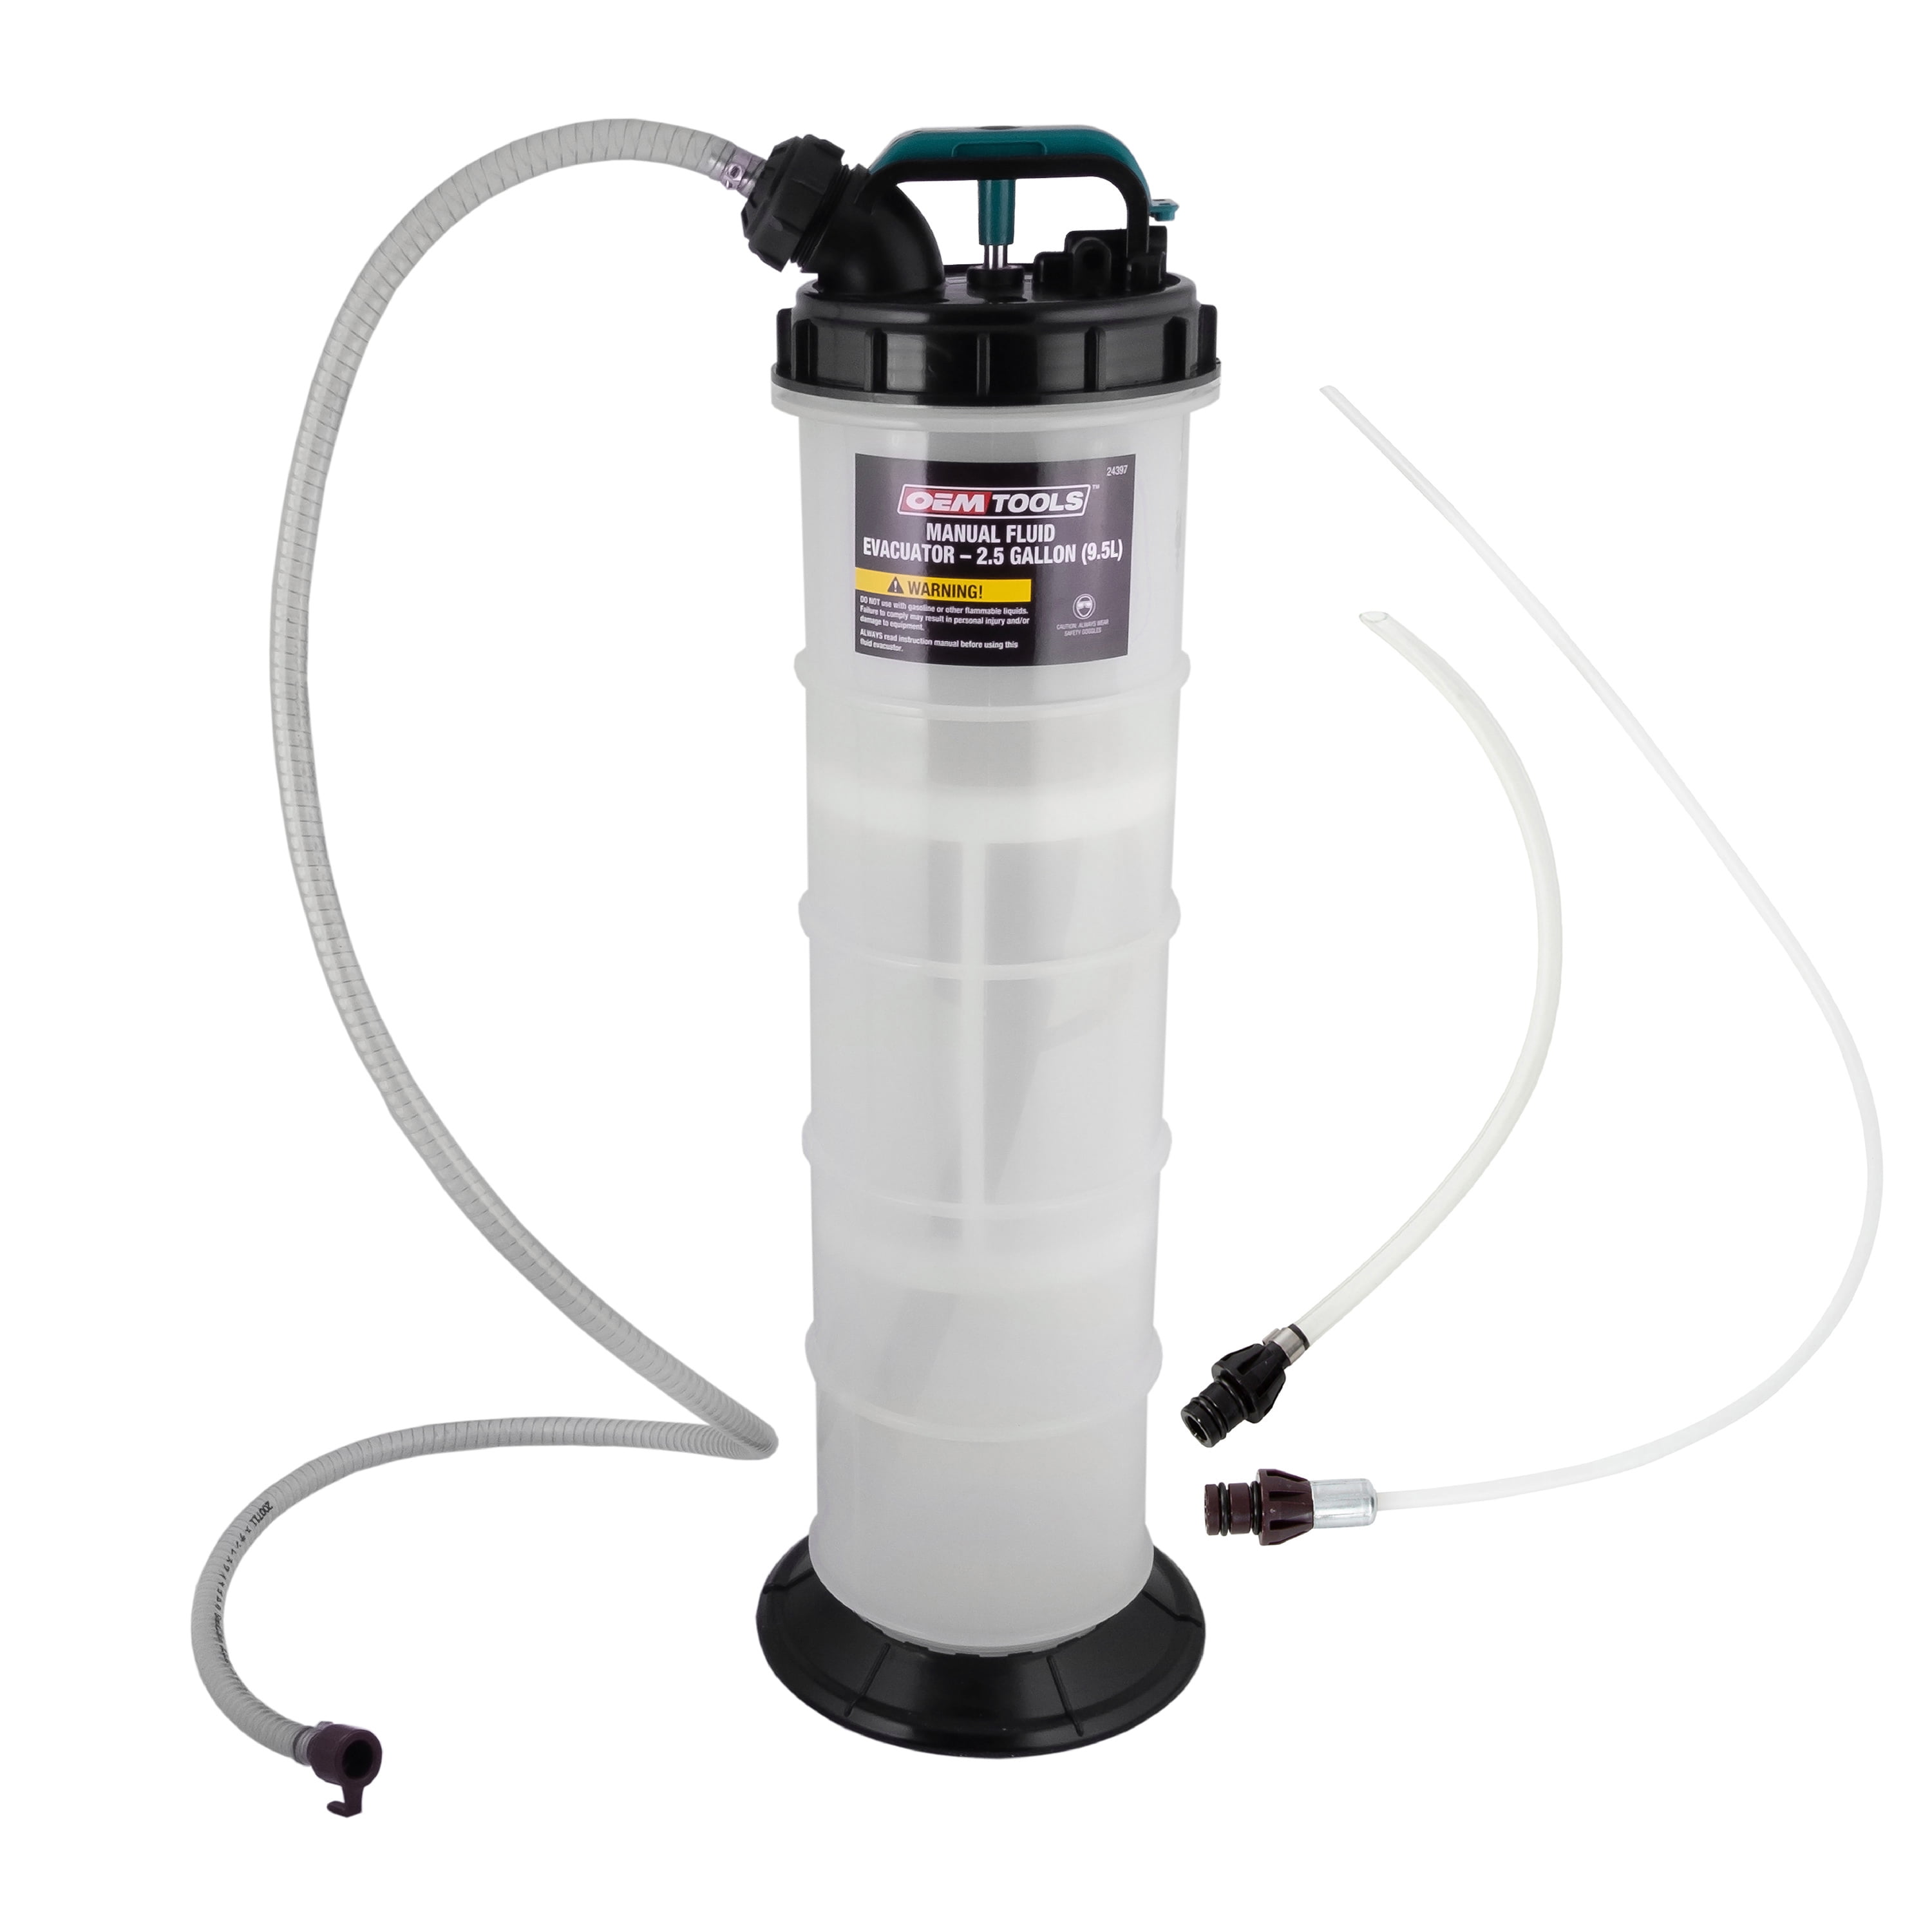 AA037 Vacuum Oil Extractor Pump, 7.5 liter Manual Fluid Extractor Pump